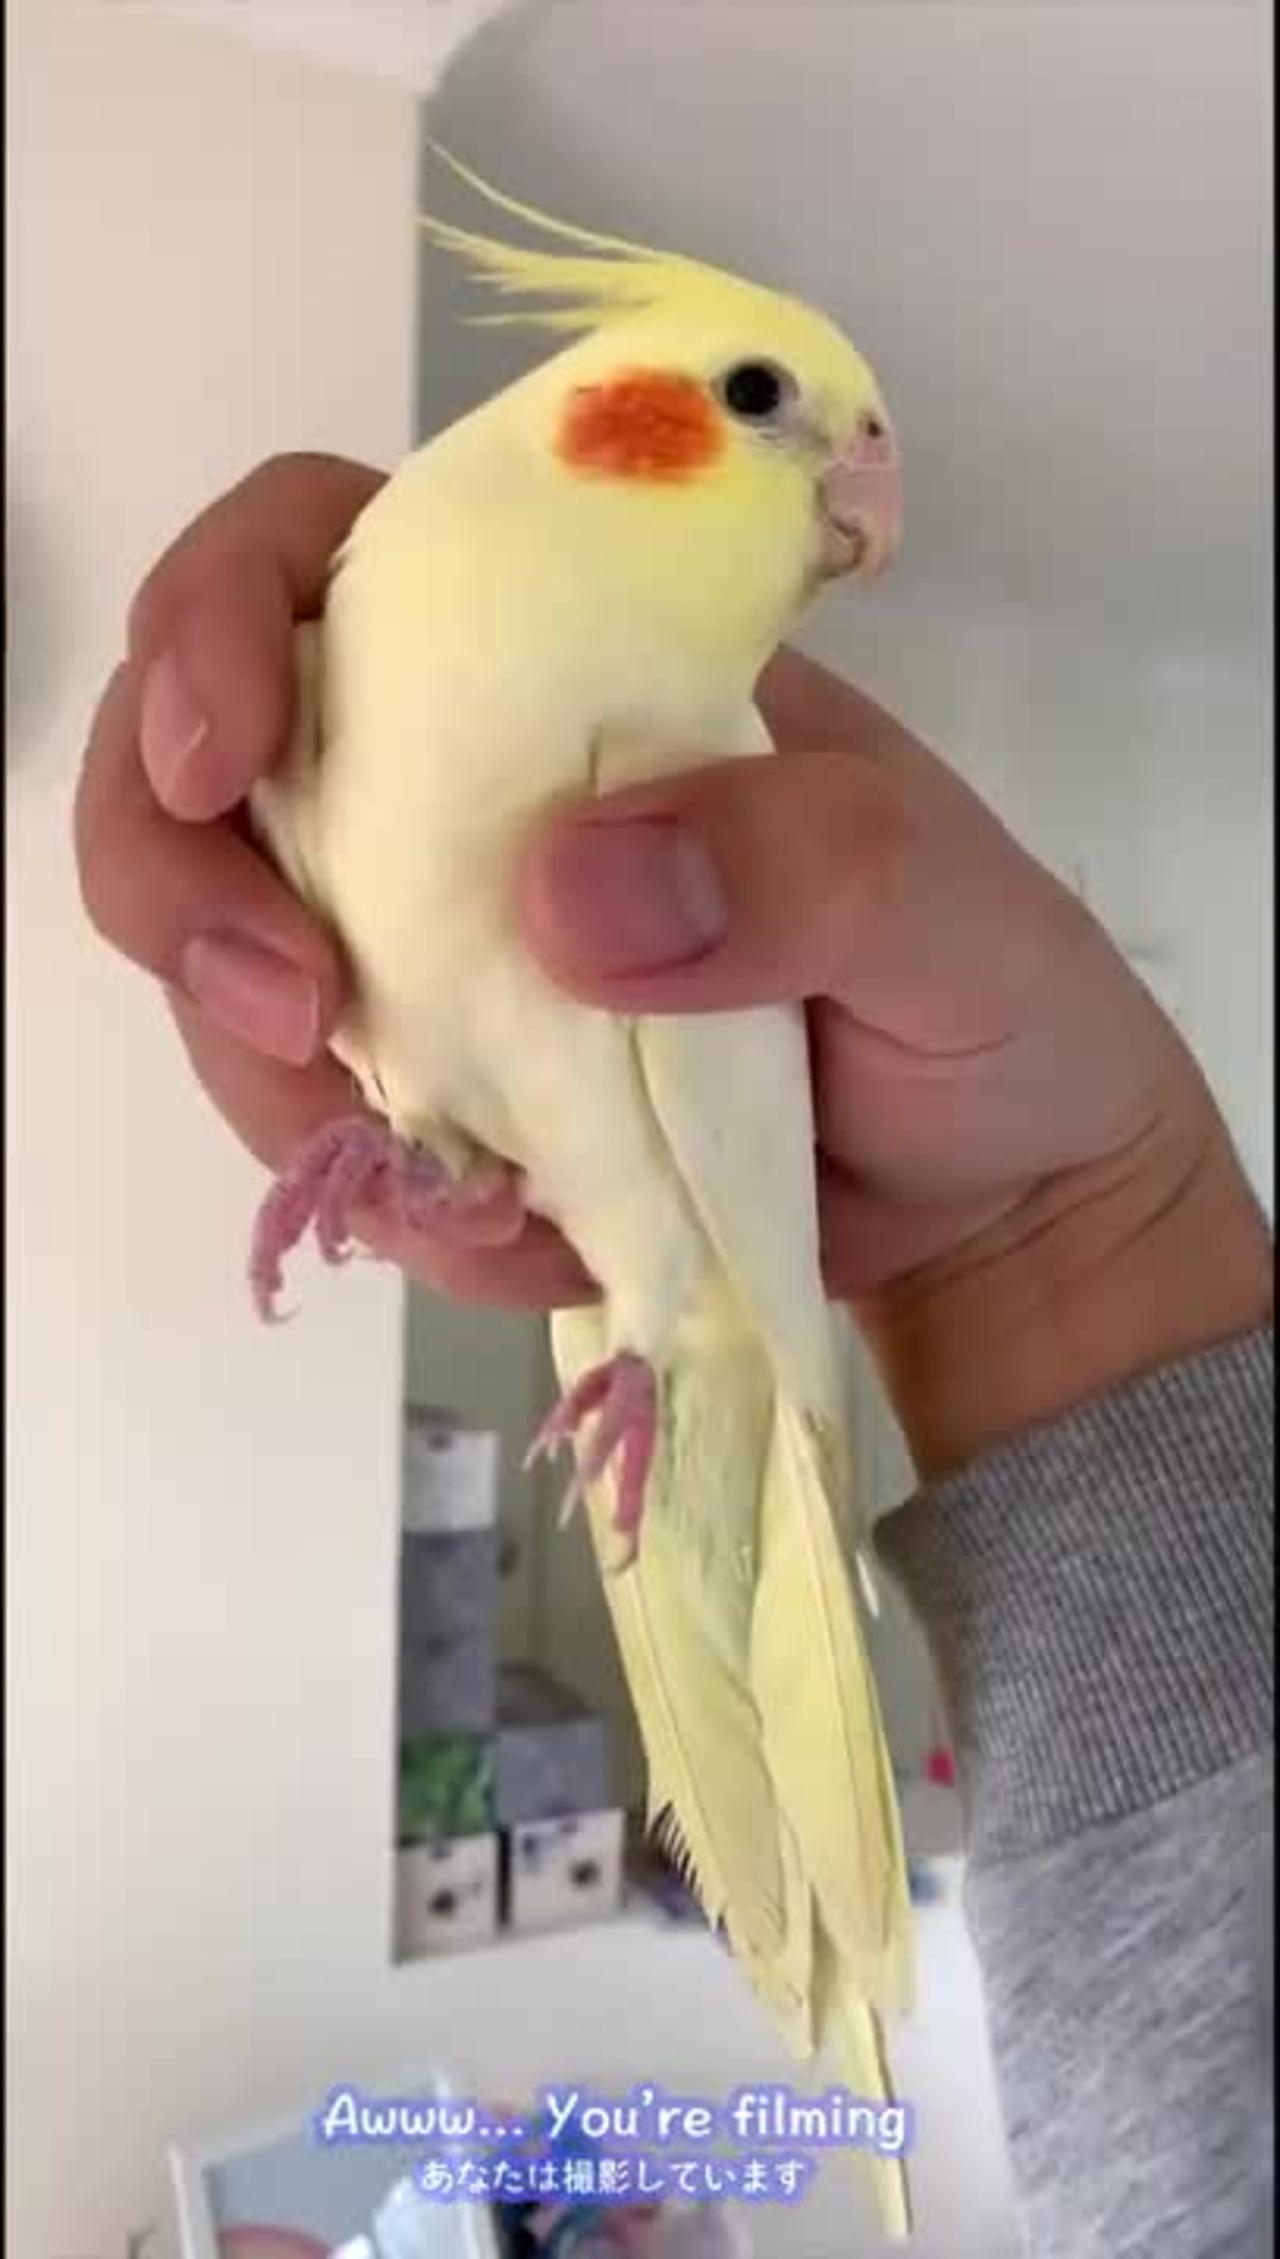 Not a bird, but a banana